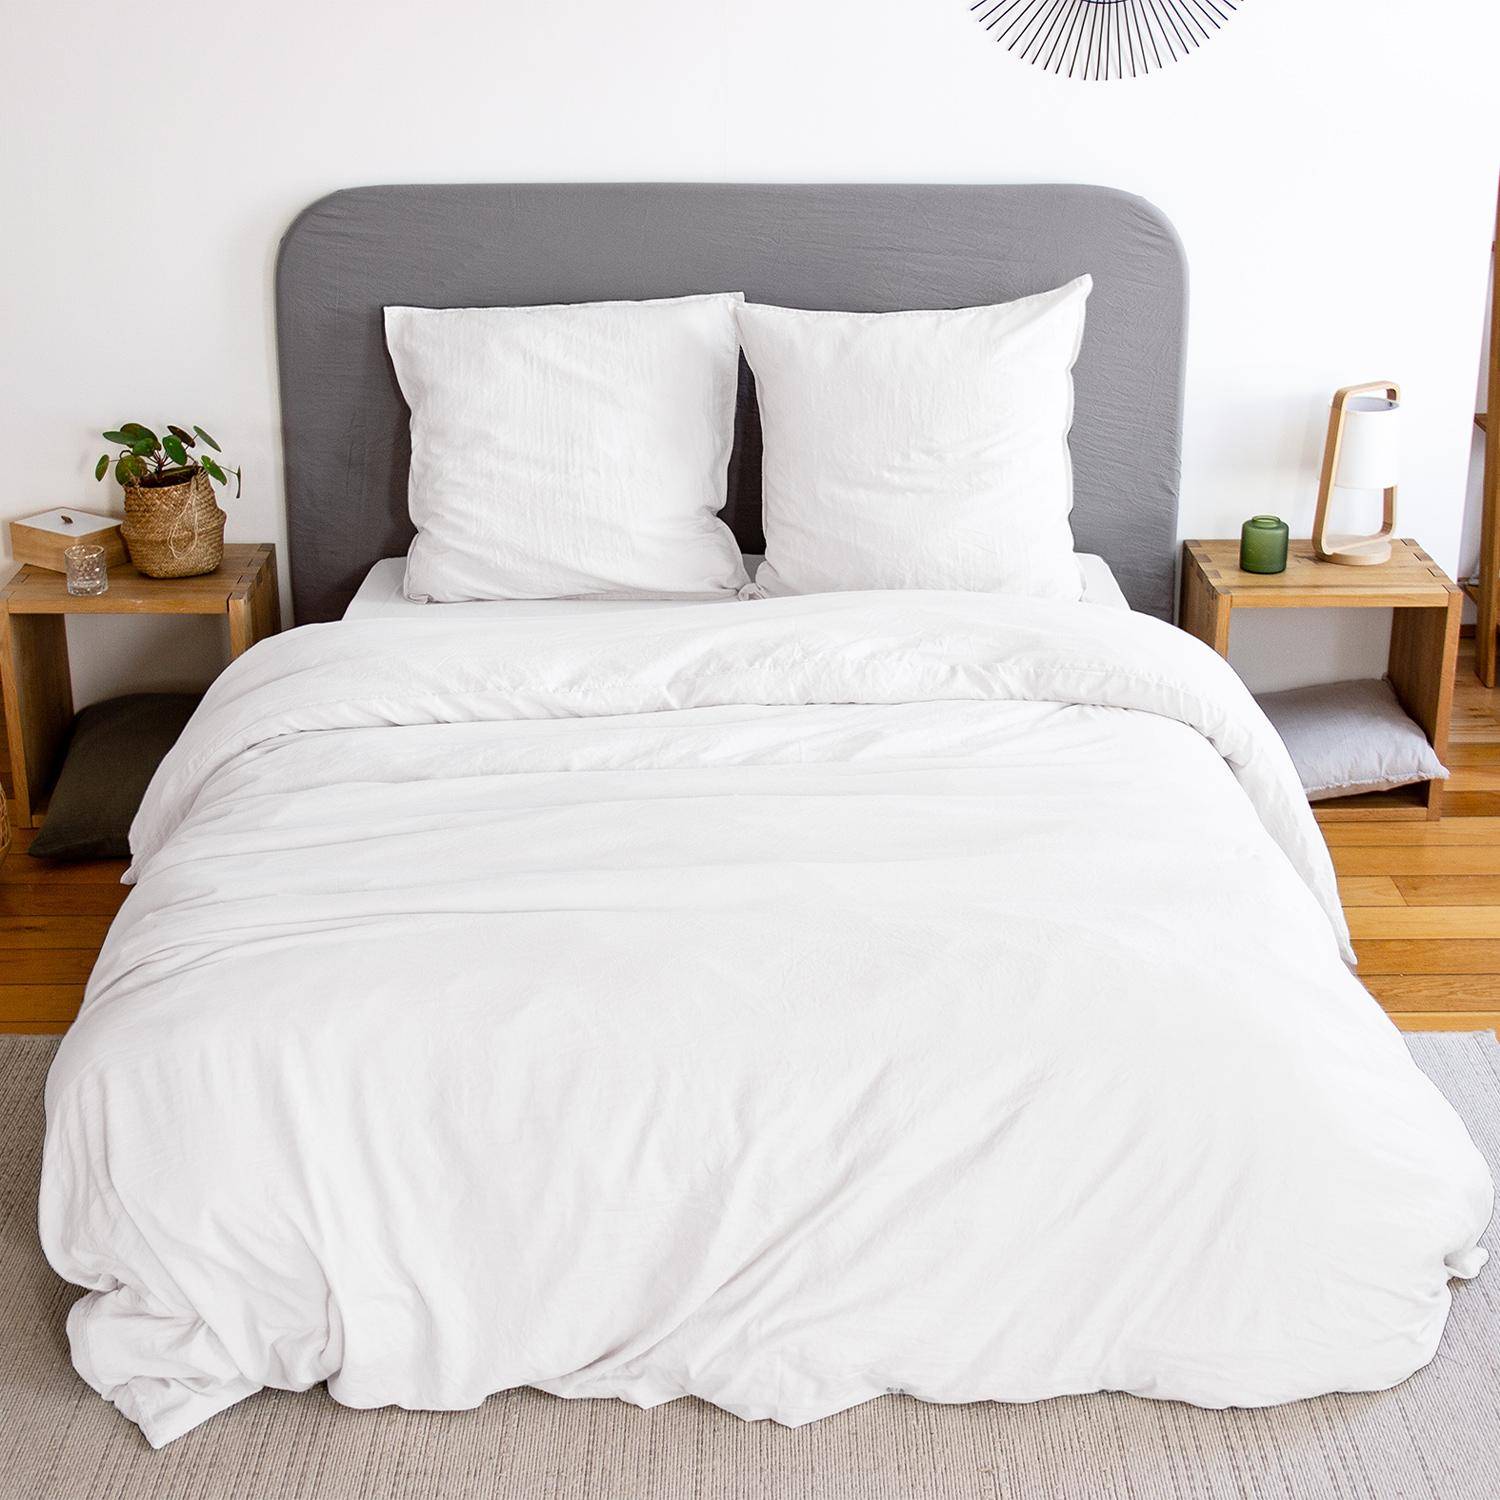 Bettwäsche-Set aus vorgewaschener Mikrofaser in weiß 260 x 240 cm für Doppelbetten, 1 Bettbezug und 2 Kissenbezüge Photo1